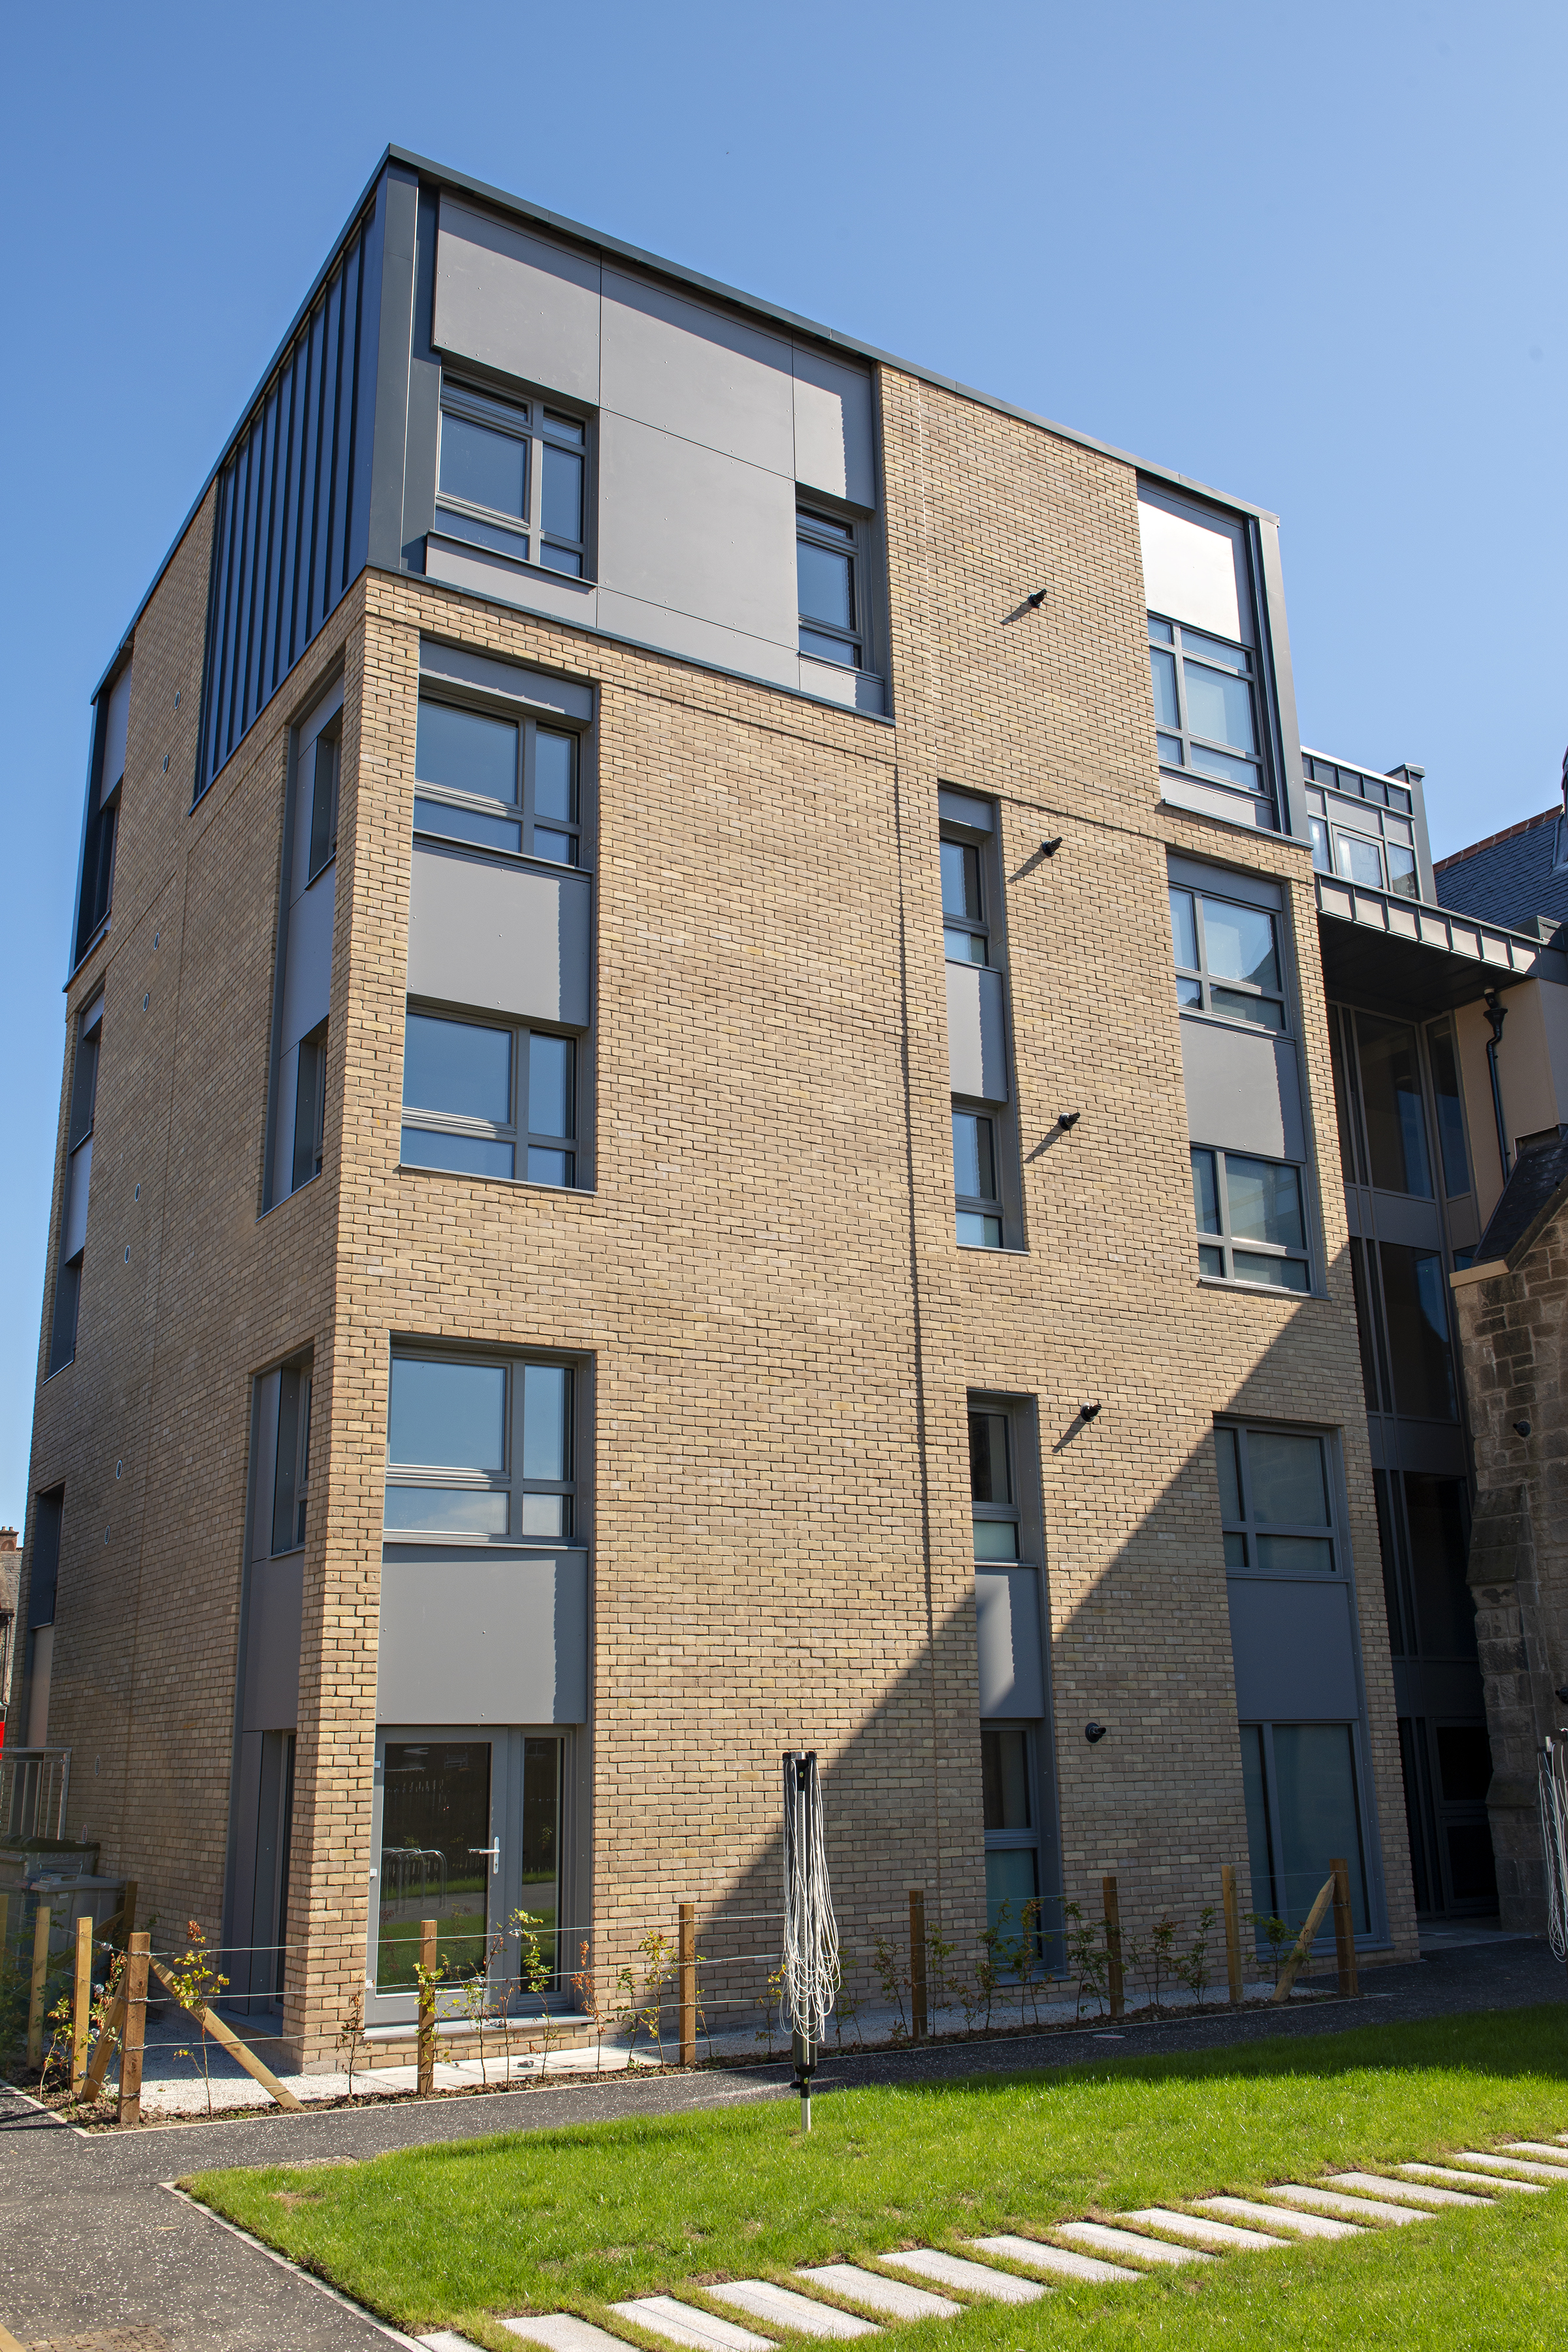 Housing association wins award for Passivhaus development in Shettleston